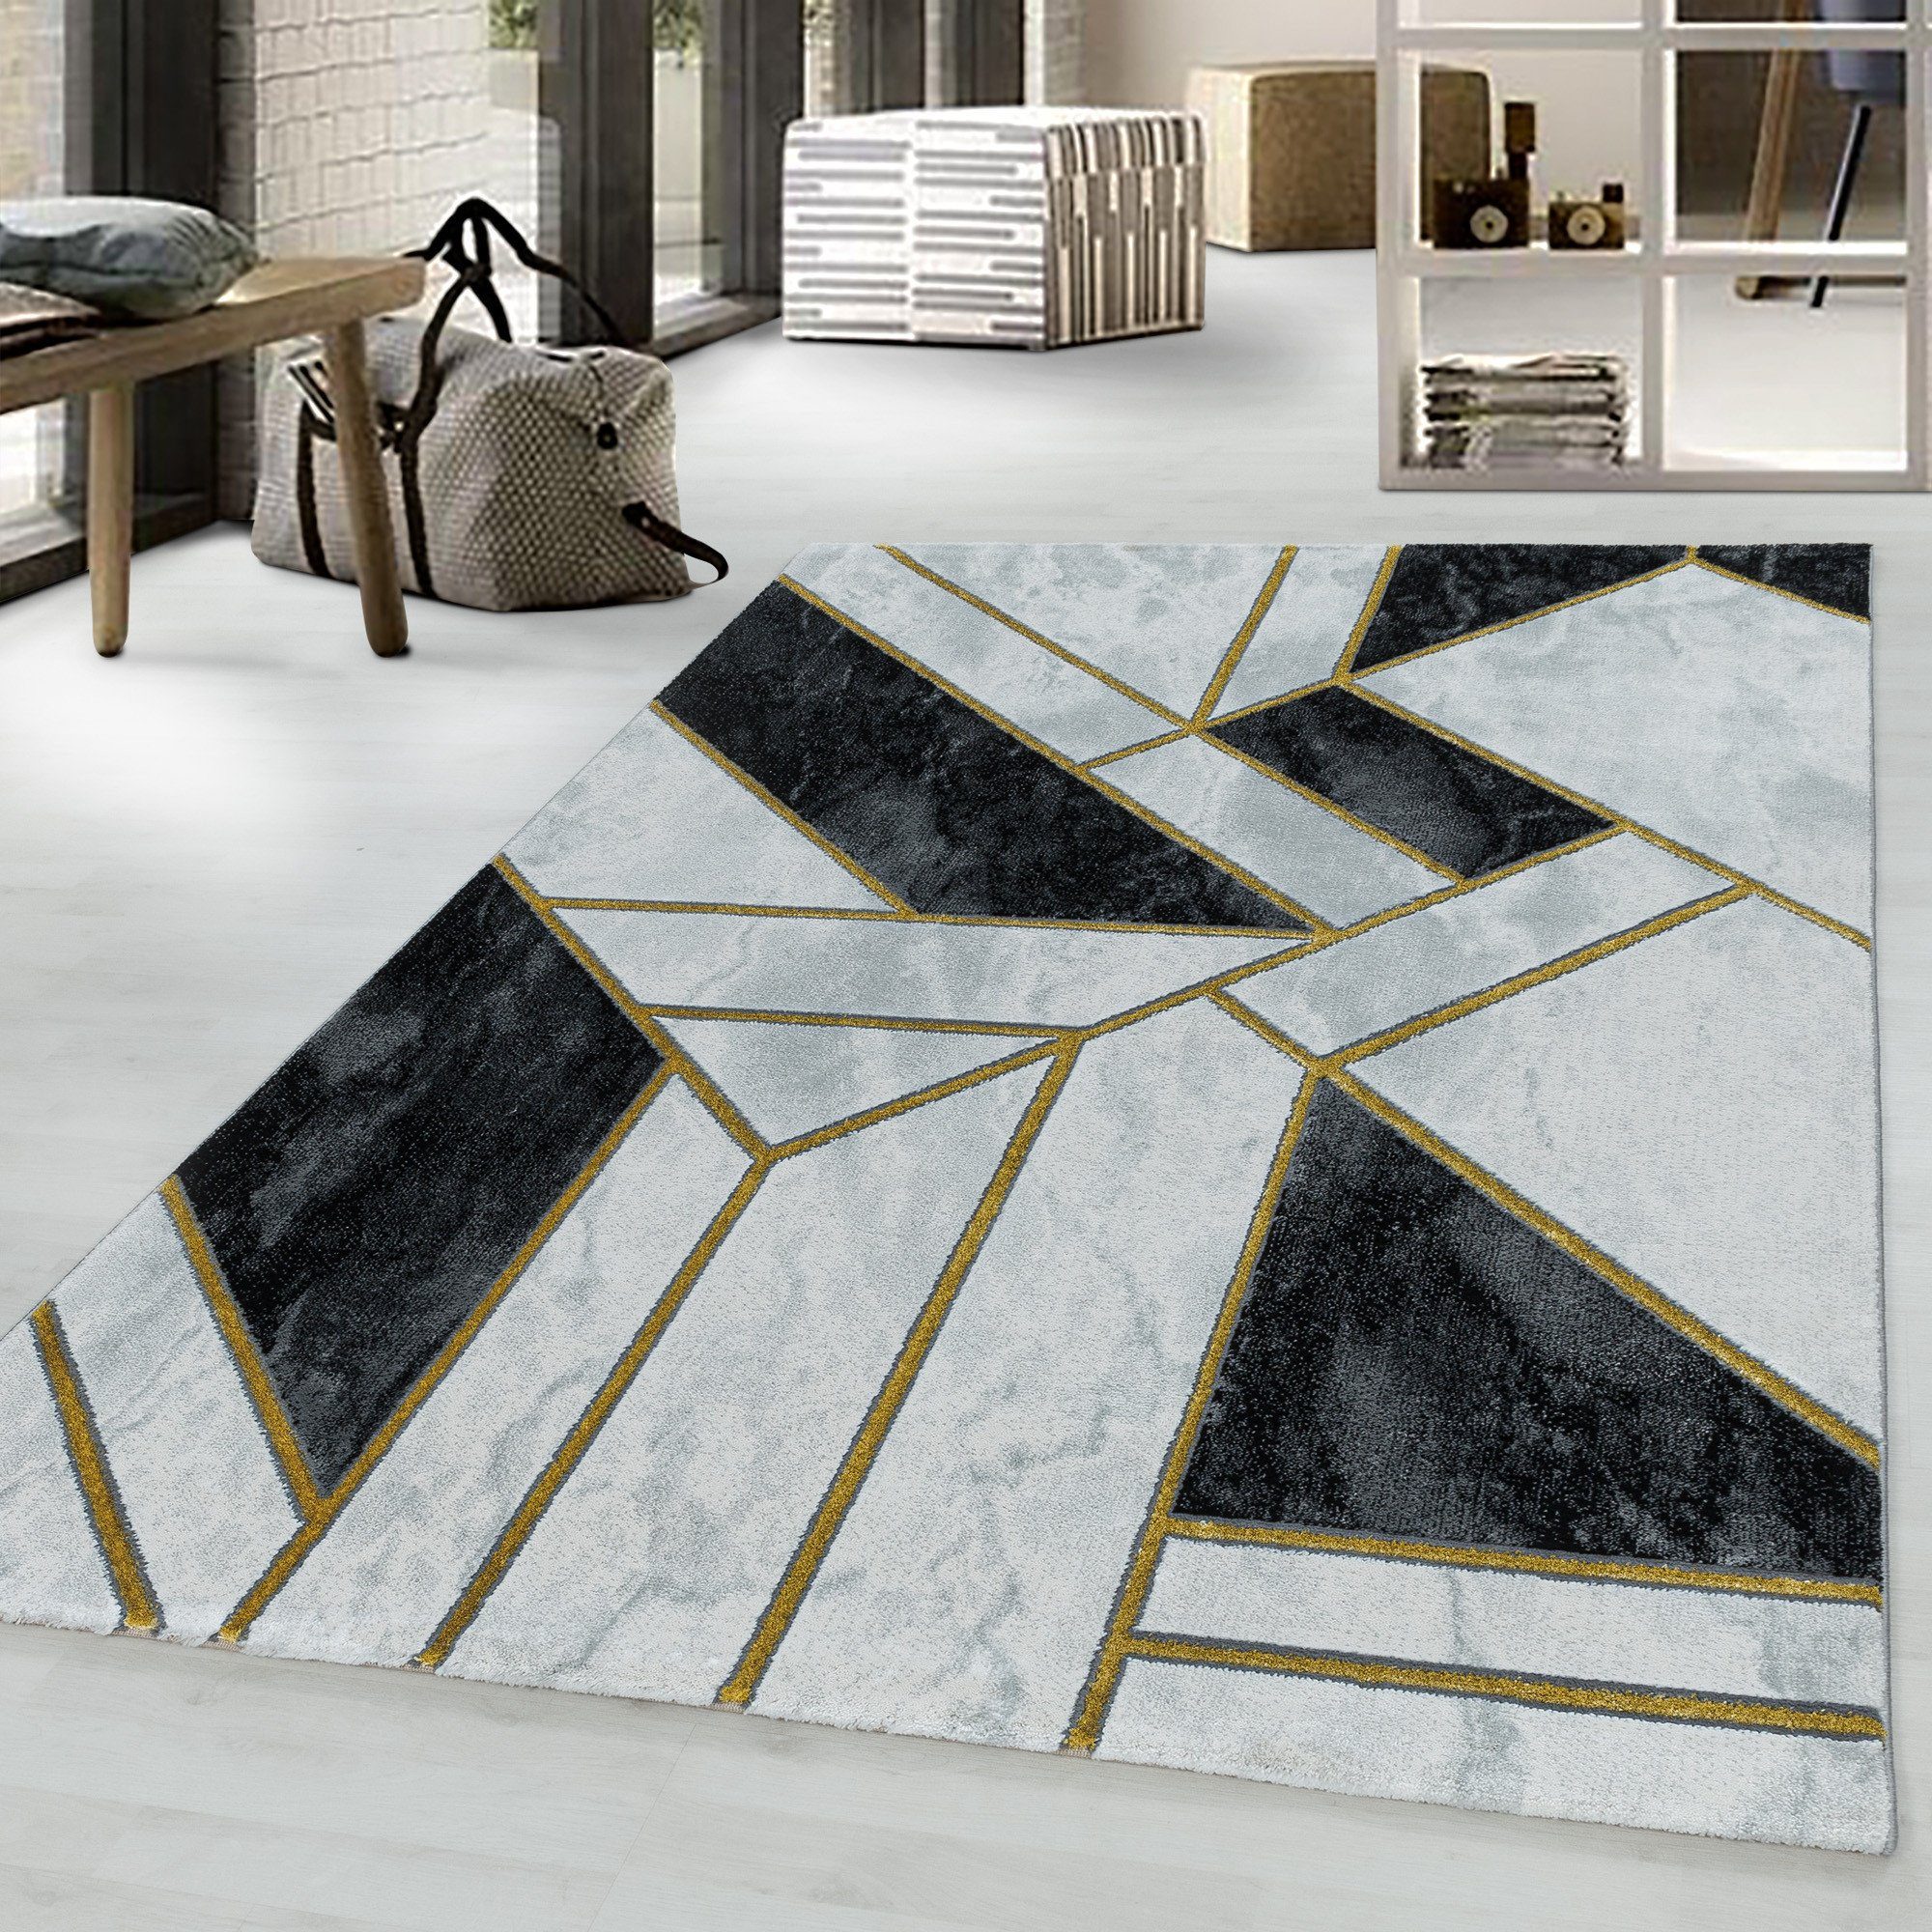 Designteppich Mosaikoptik Kurzflorteppich Flachflorteppich Schlafzimmer Miovani Gold Wohnzimmer